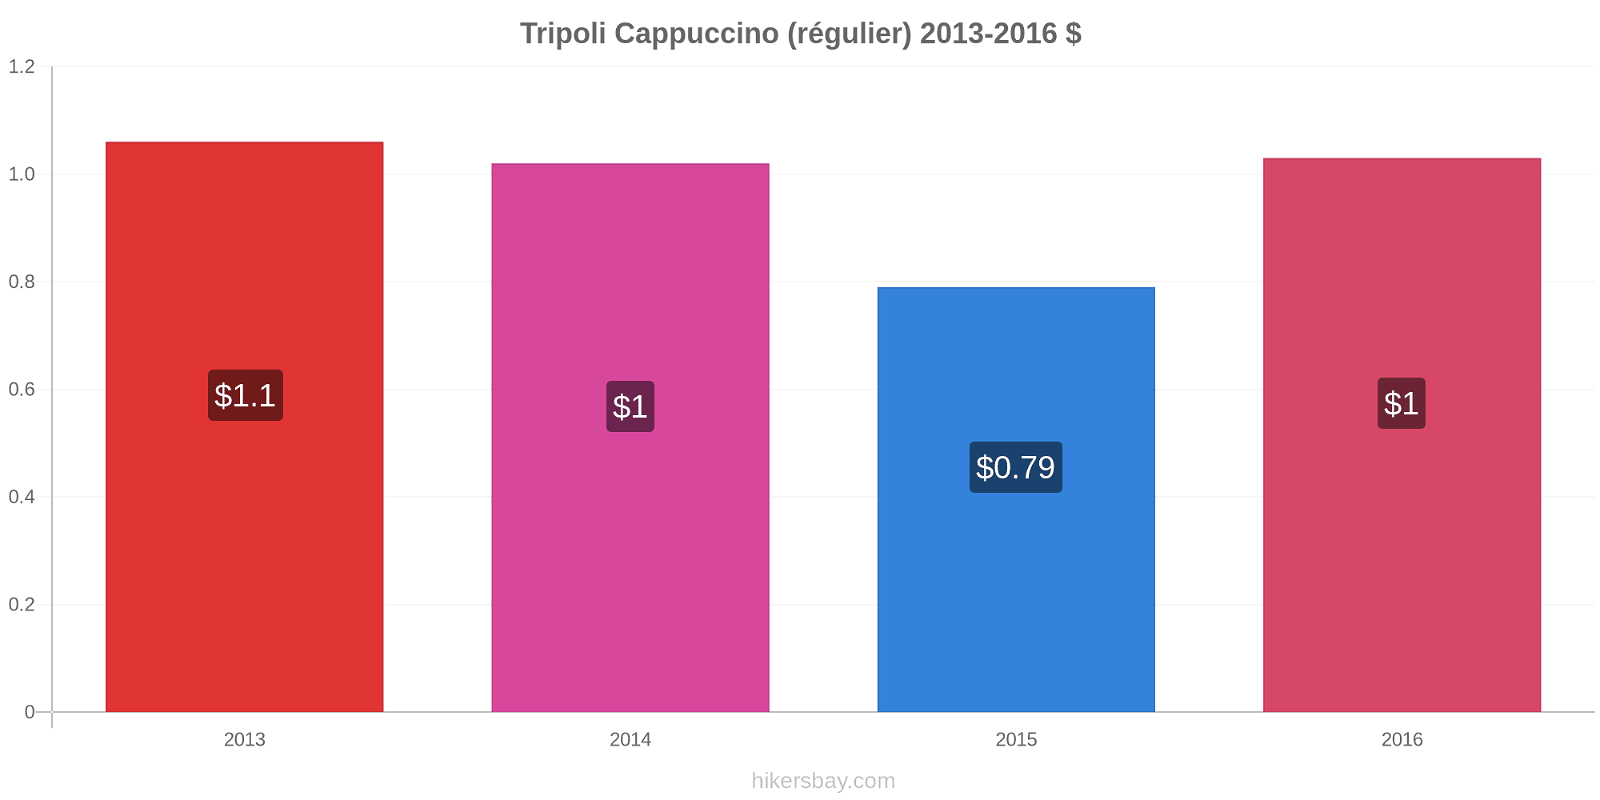 Tripoli changements de prix Cappuccino (régulier) hikersbay.com